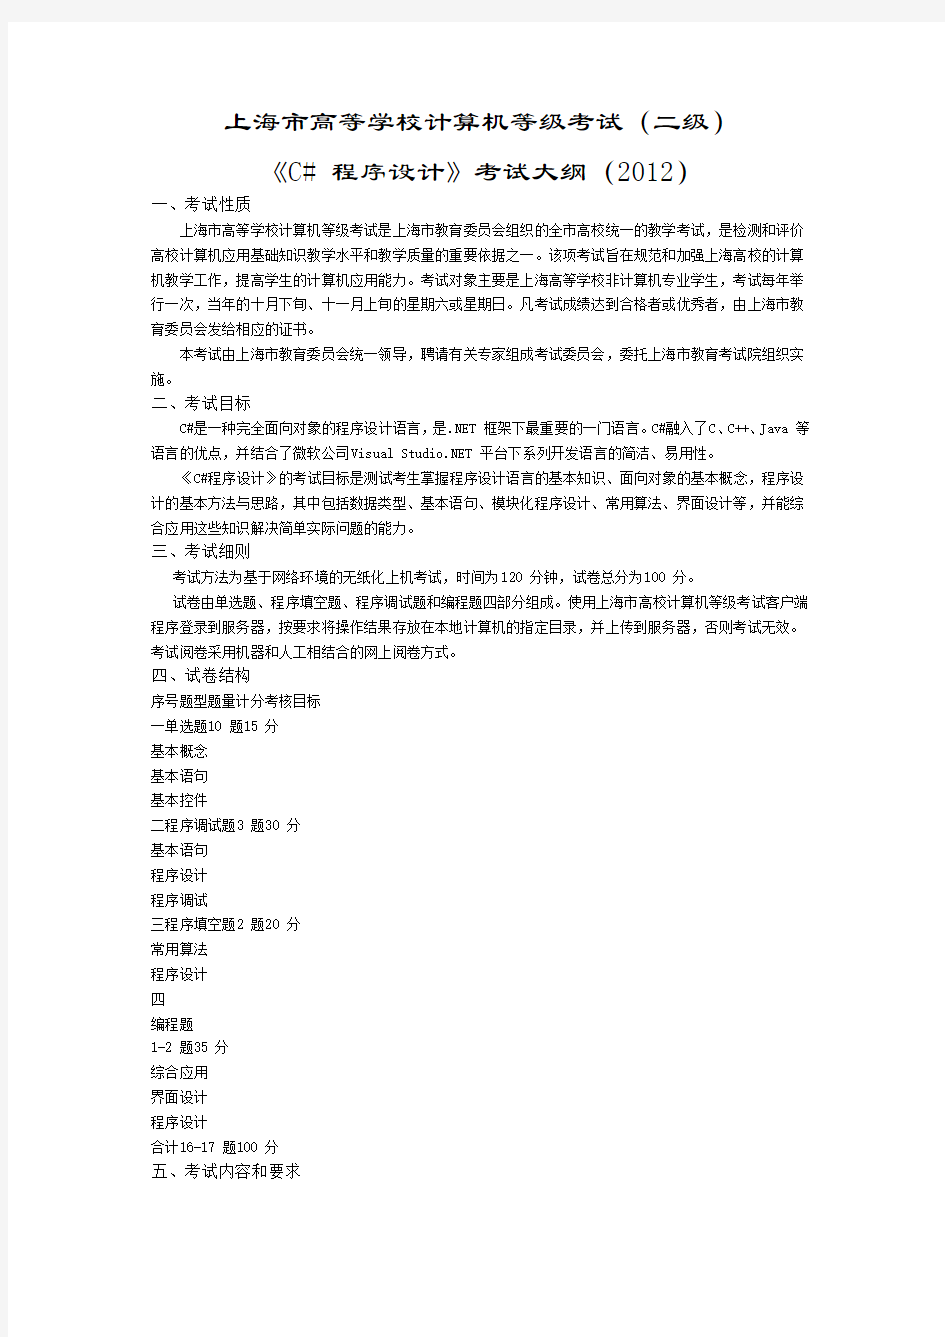 上海市《C# 程序设计》考试大纲(2012)